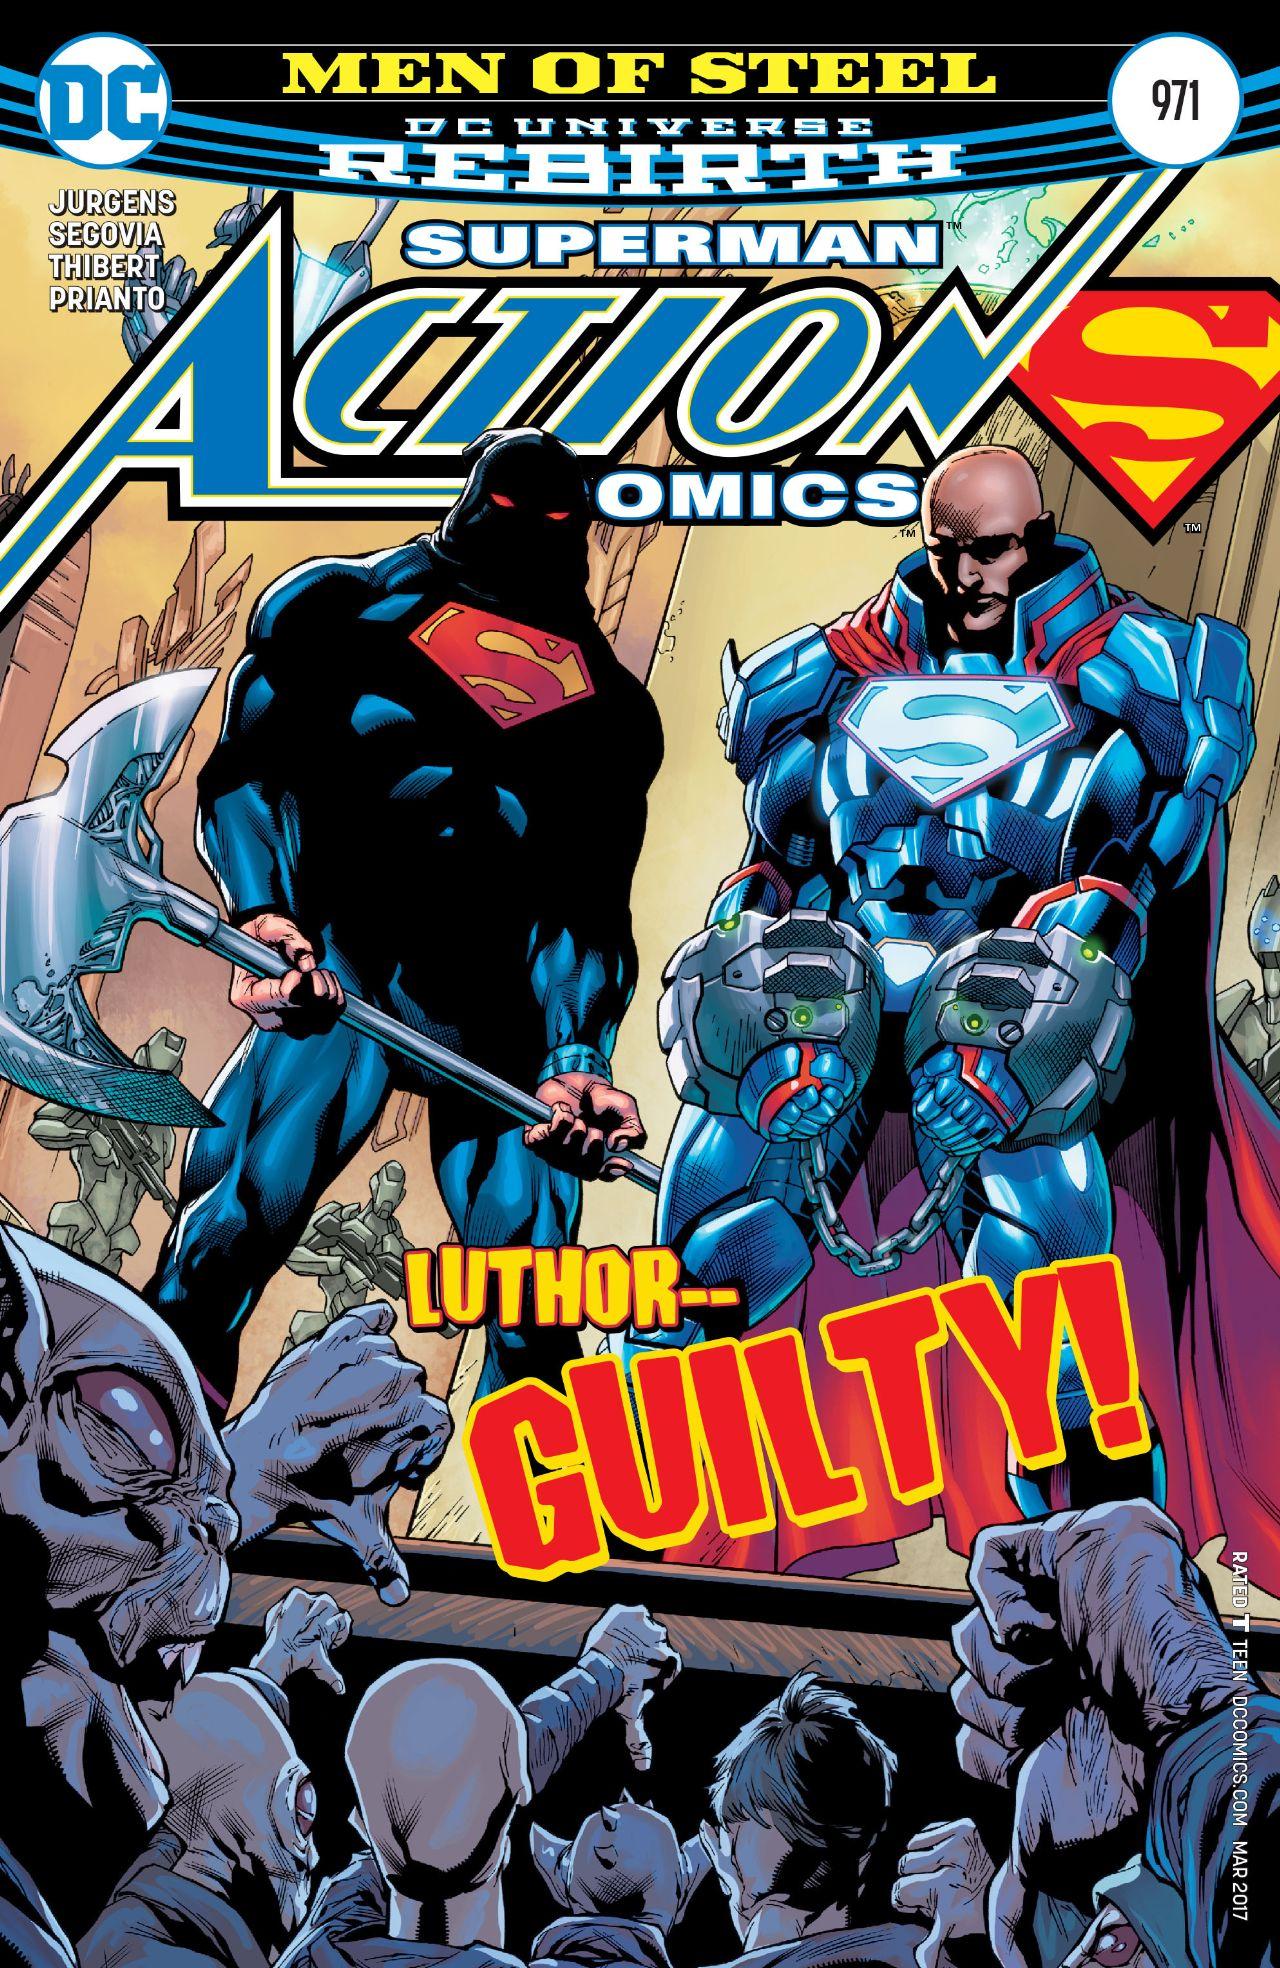 Action Comics Vol. 1 #971